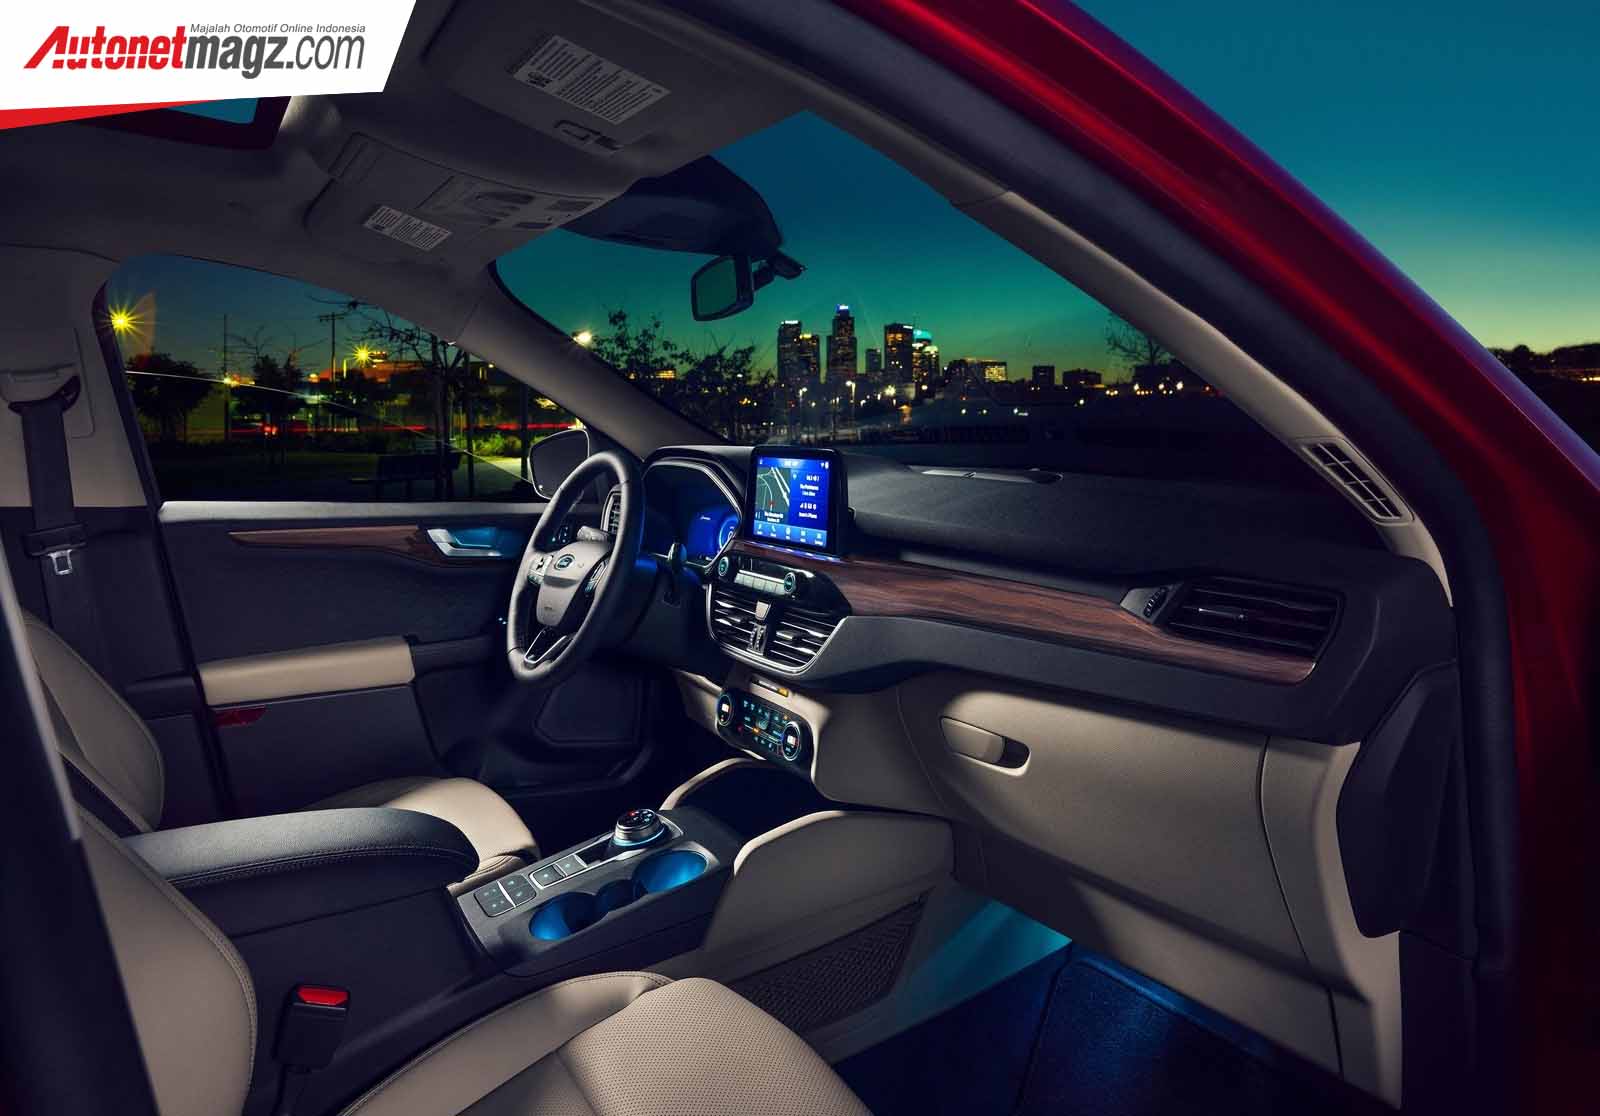 Berita, Harga Ford Focus 2020: Ford Escape 2020 : Ford Focus Versi SUV Dengan mesin Hybrid & PHEV